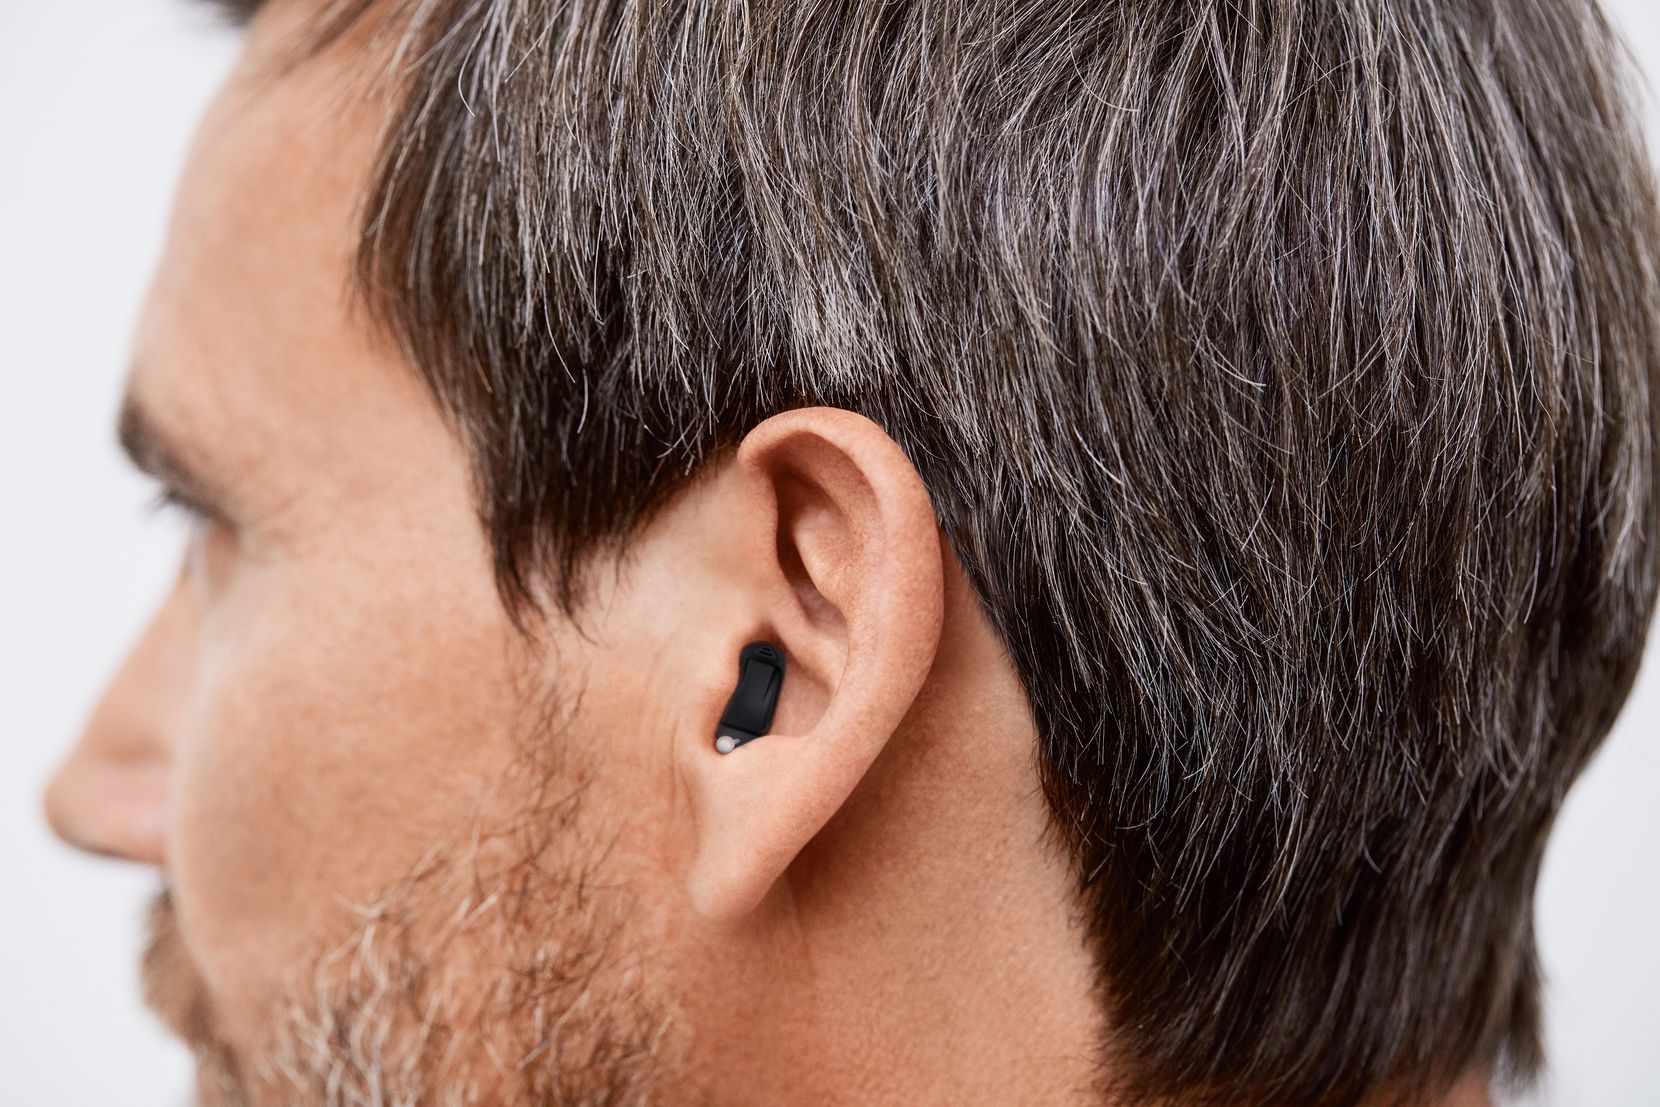 Der Kopf eines Mannes von der Seite aus fotografiert. Der Mann trägt ein kleines Hörgerät im Ohr.